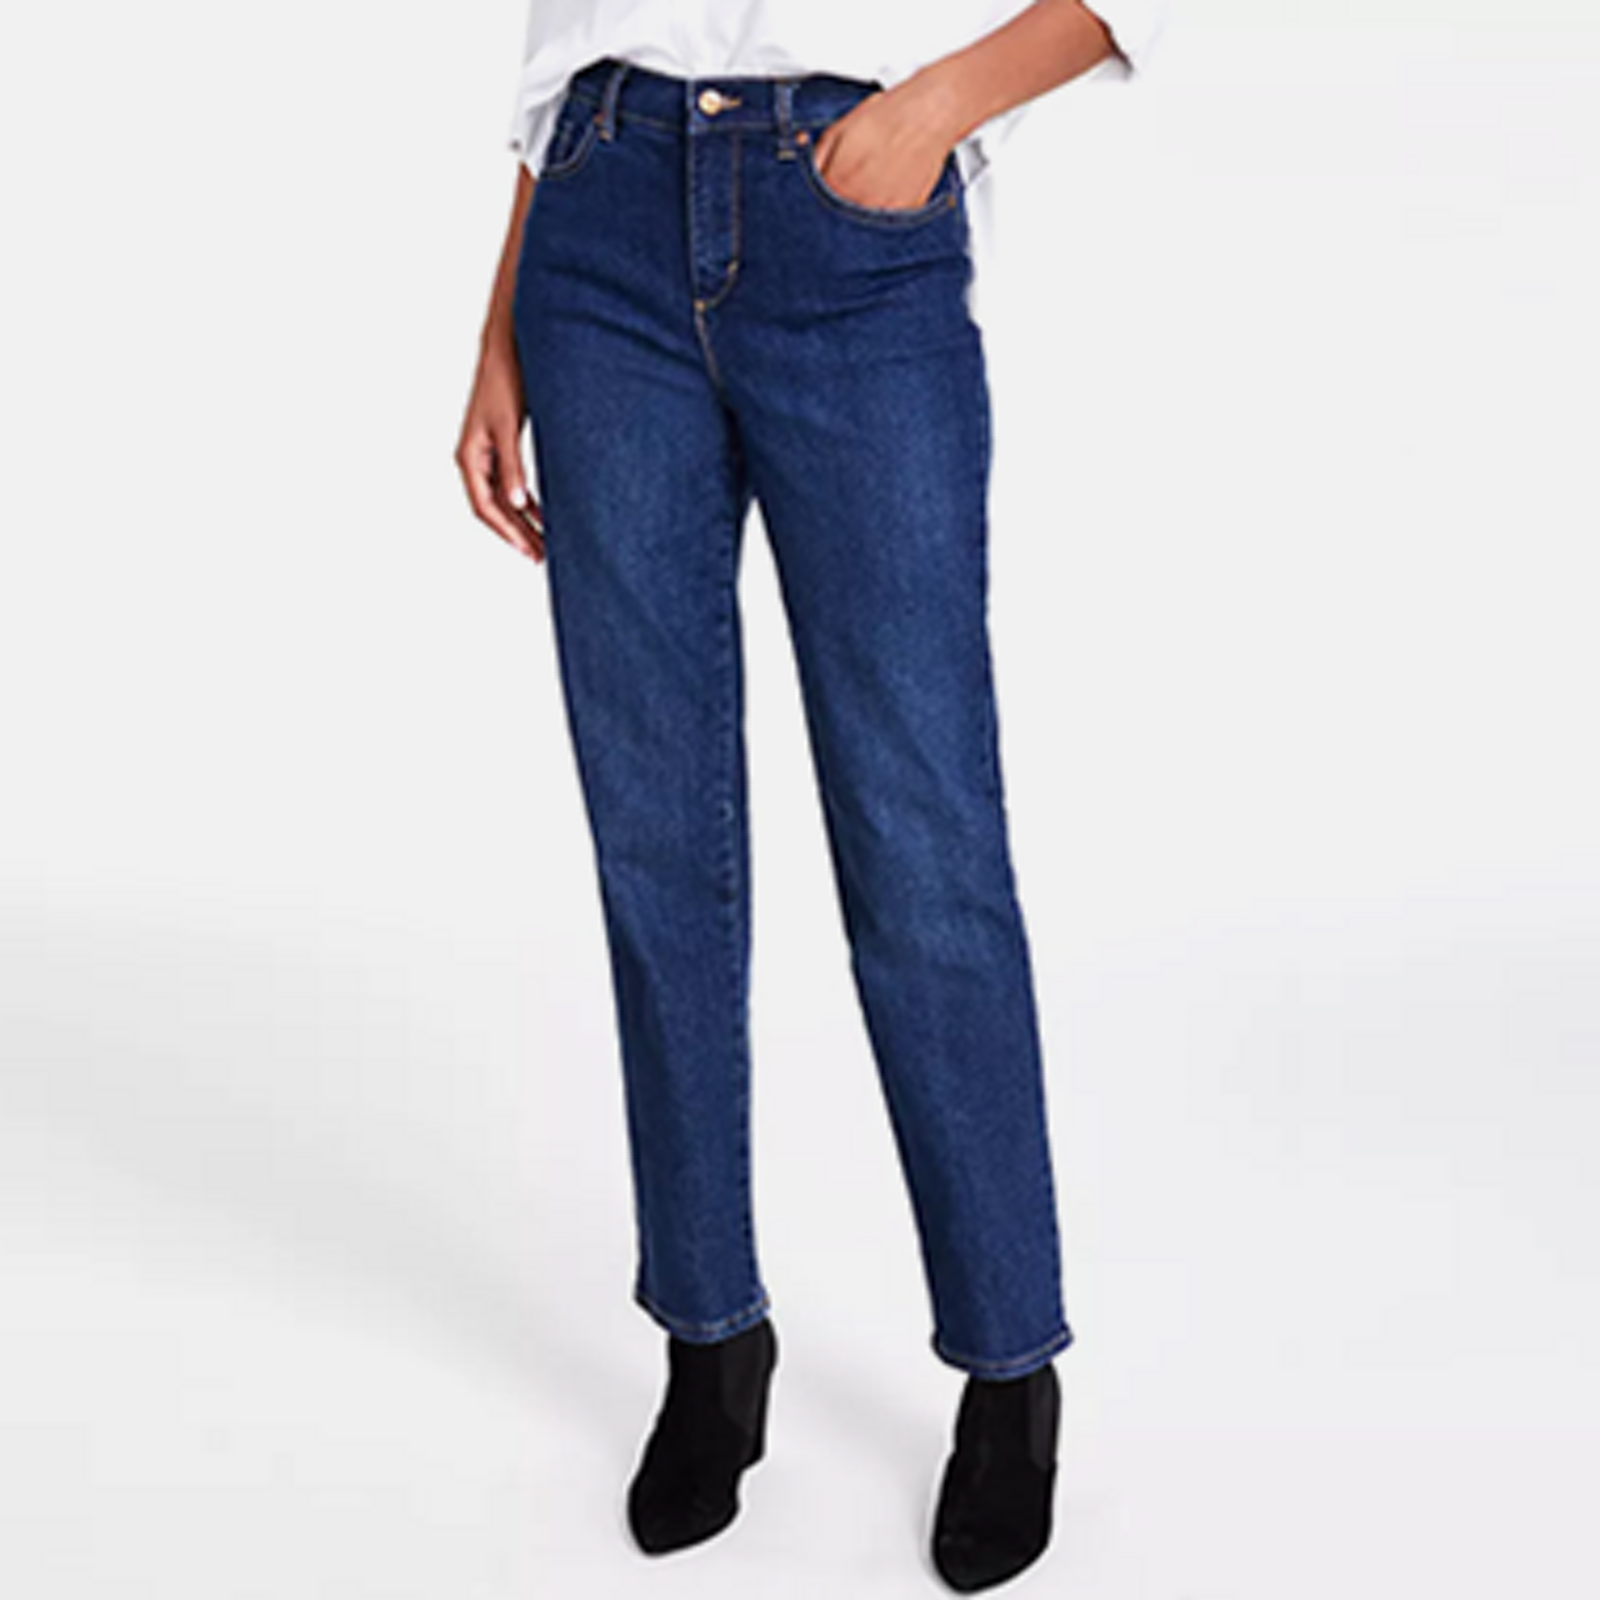 Women's Jeans in Blue - Macy's